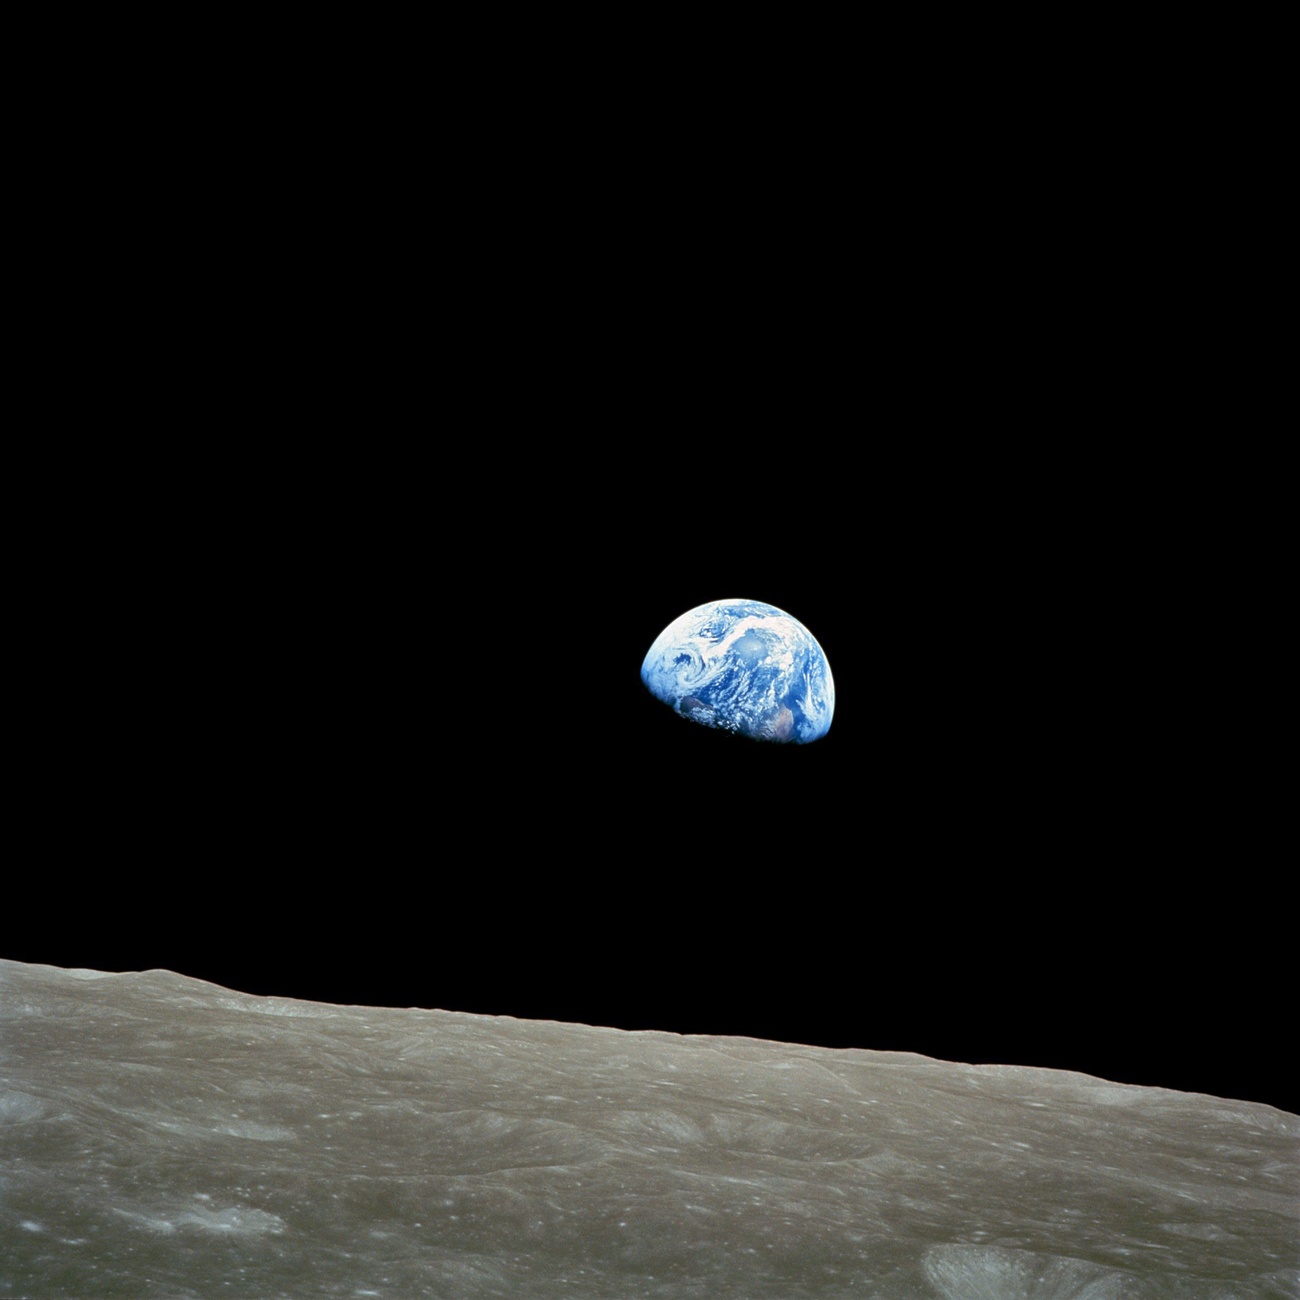 Vista da Terra a partir da Lua.